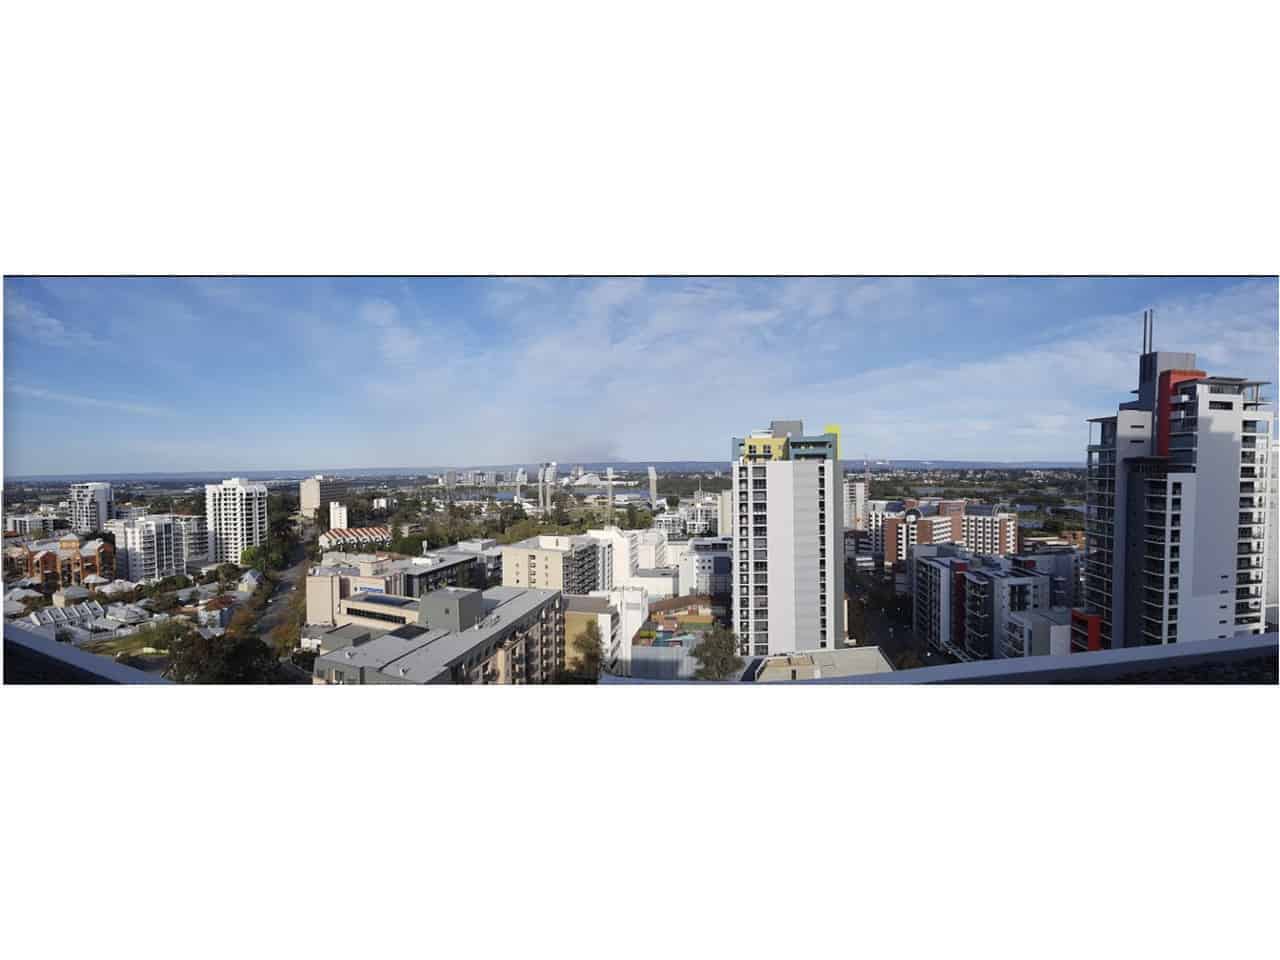 Perth city views